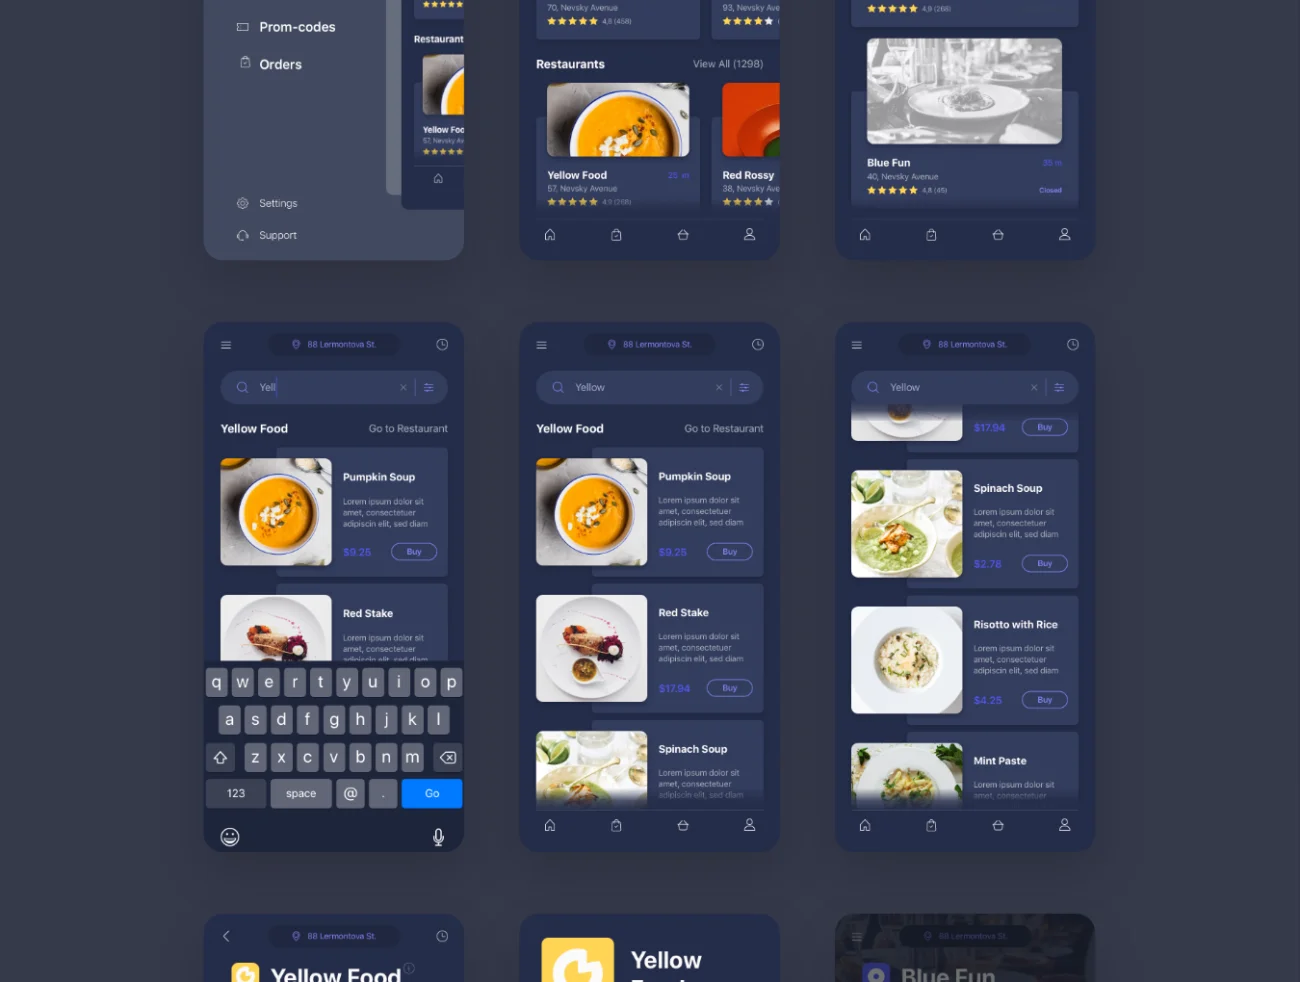 外卖点餐配送iOS应用UI设计套件100屏 Delyo iOS UI Kit .sketch .figma-UI/UX、主页、出行、地图、网购、预订-到位啦UI